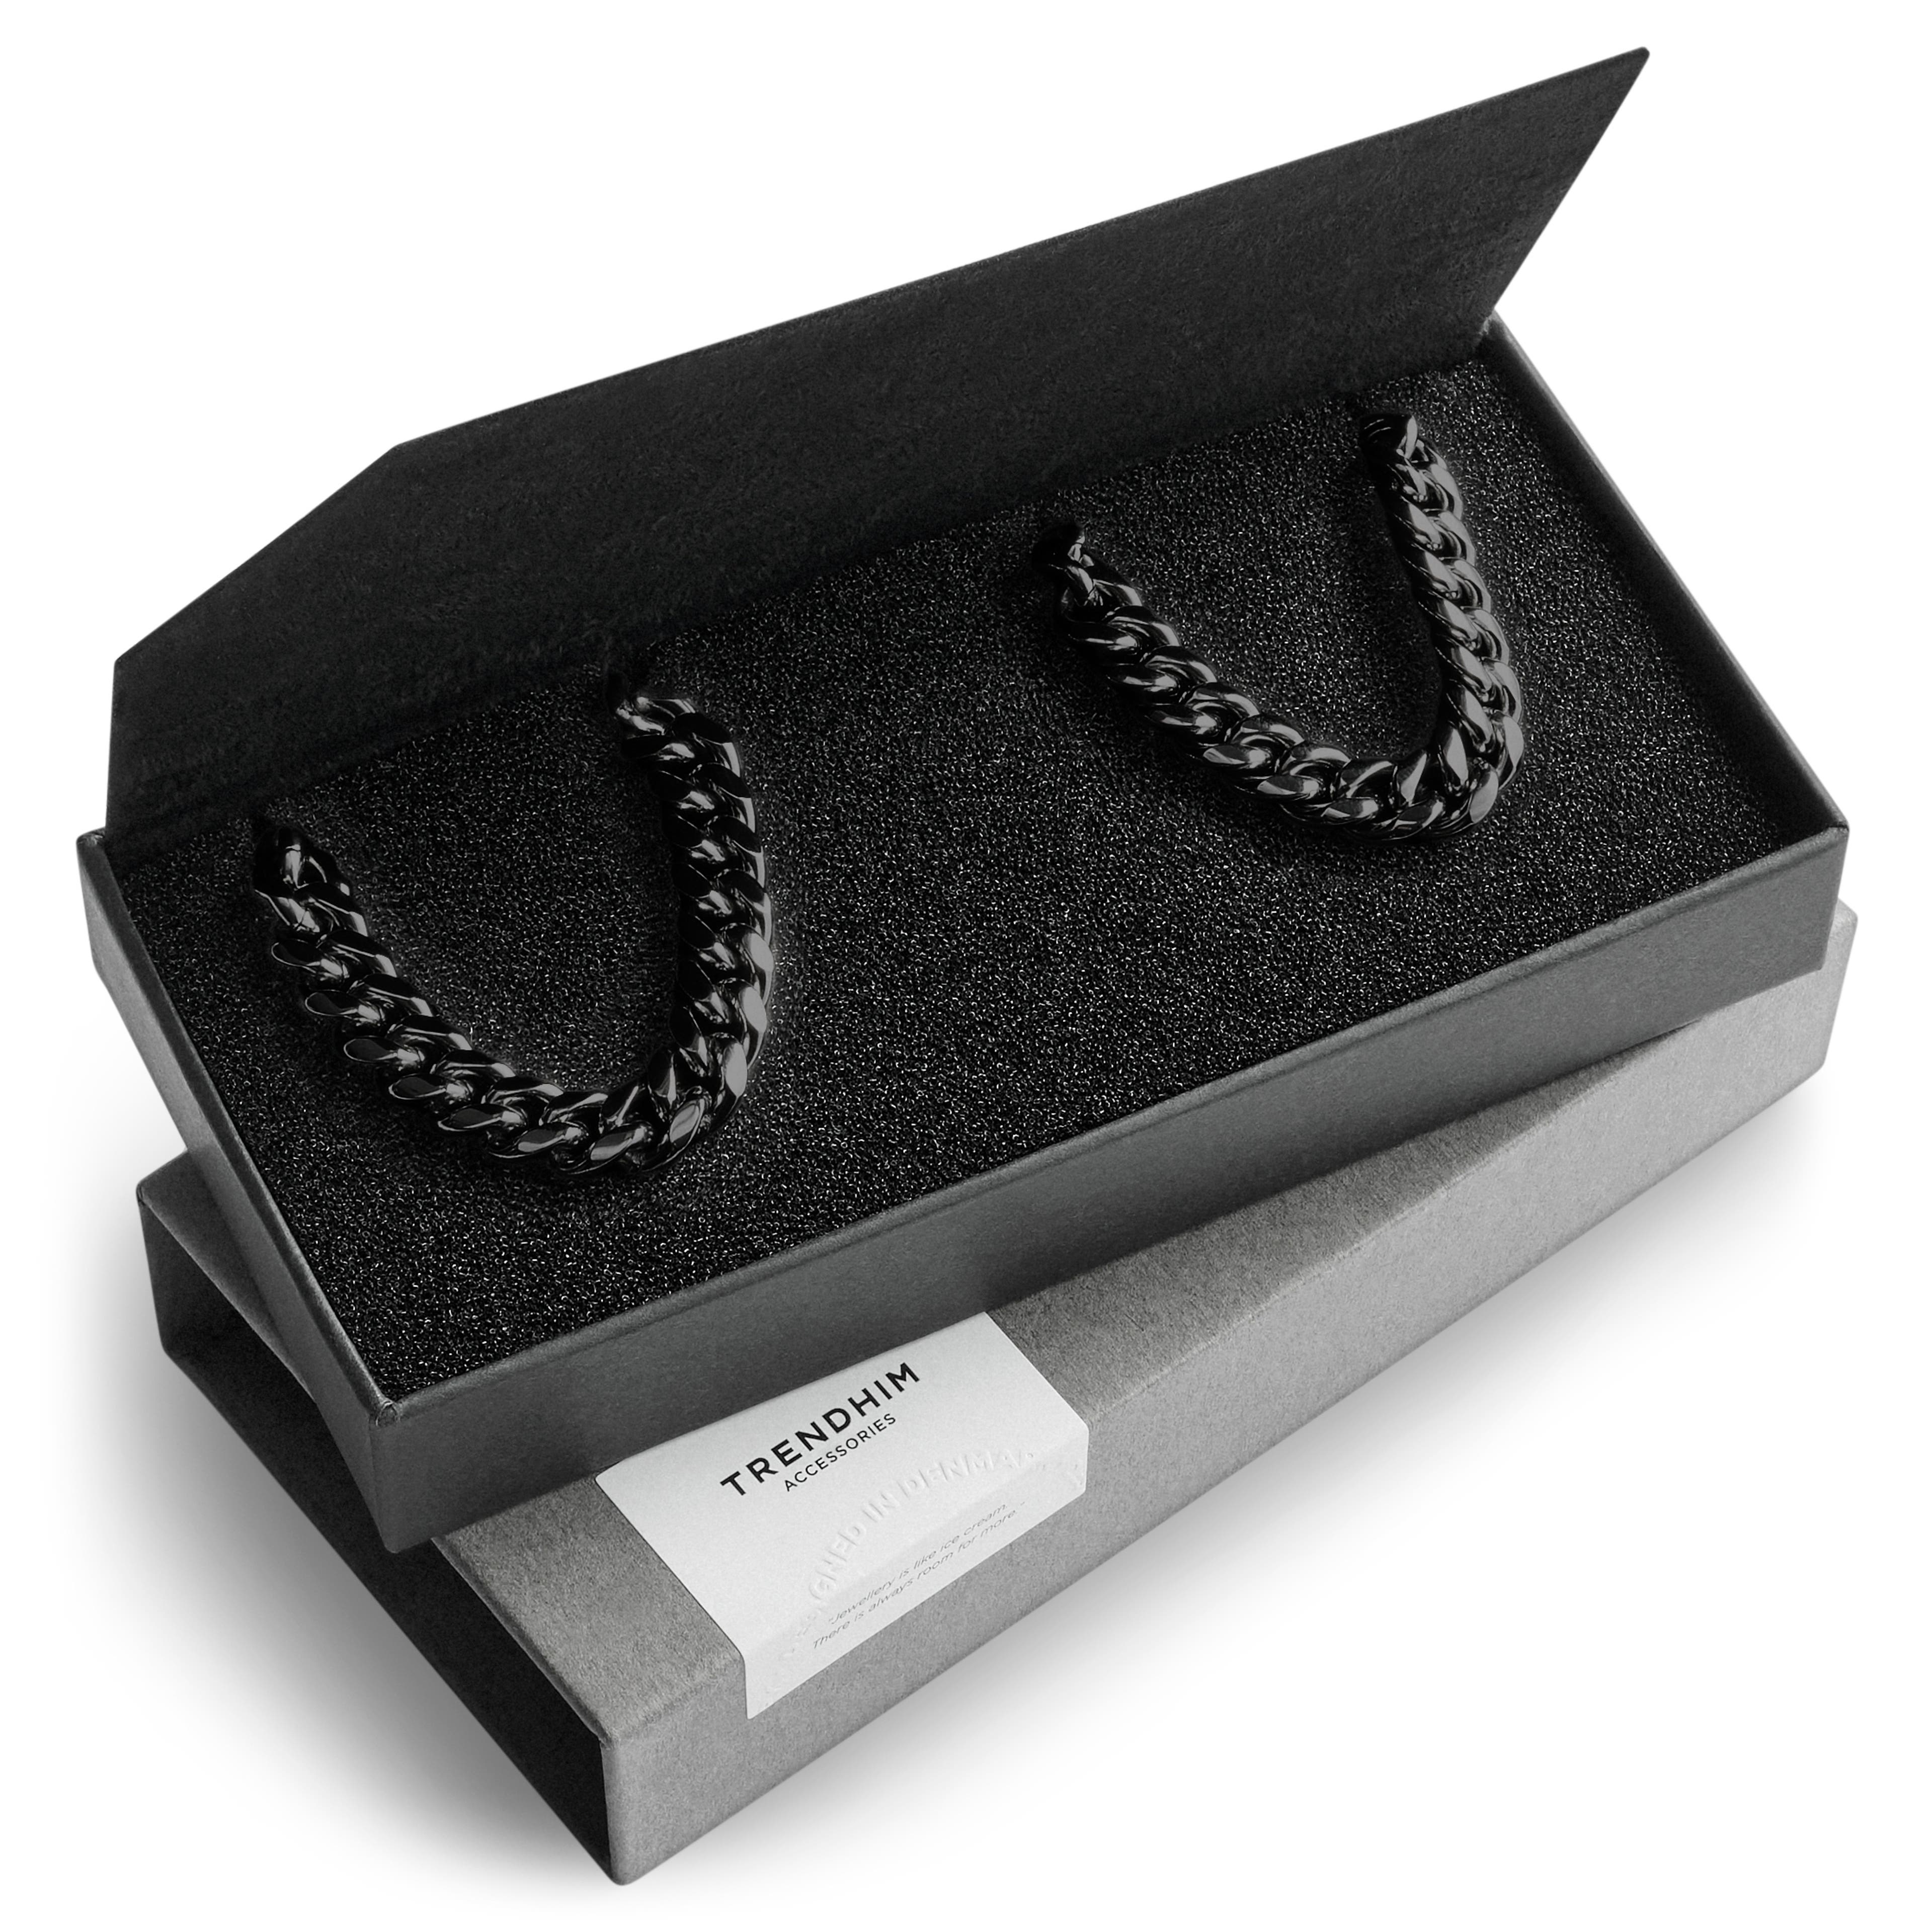 8 mm schwarzes Chirurgenstahl-Armband & Halskette Geschenkbox